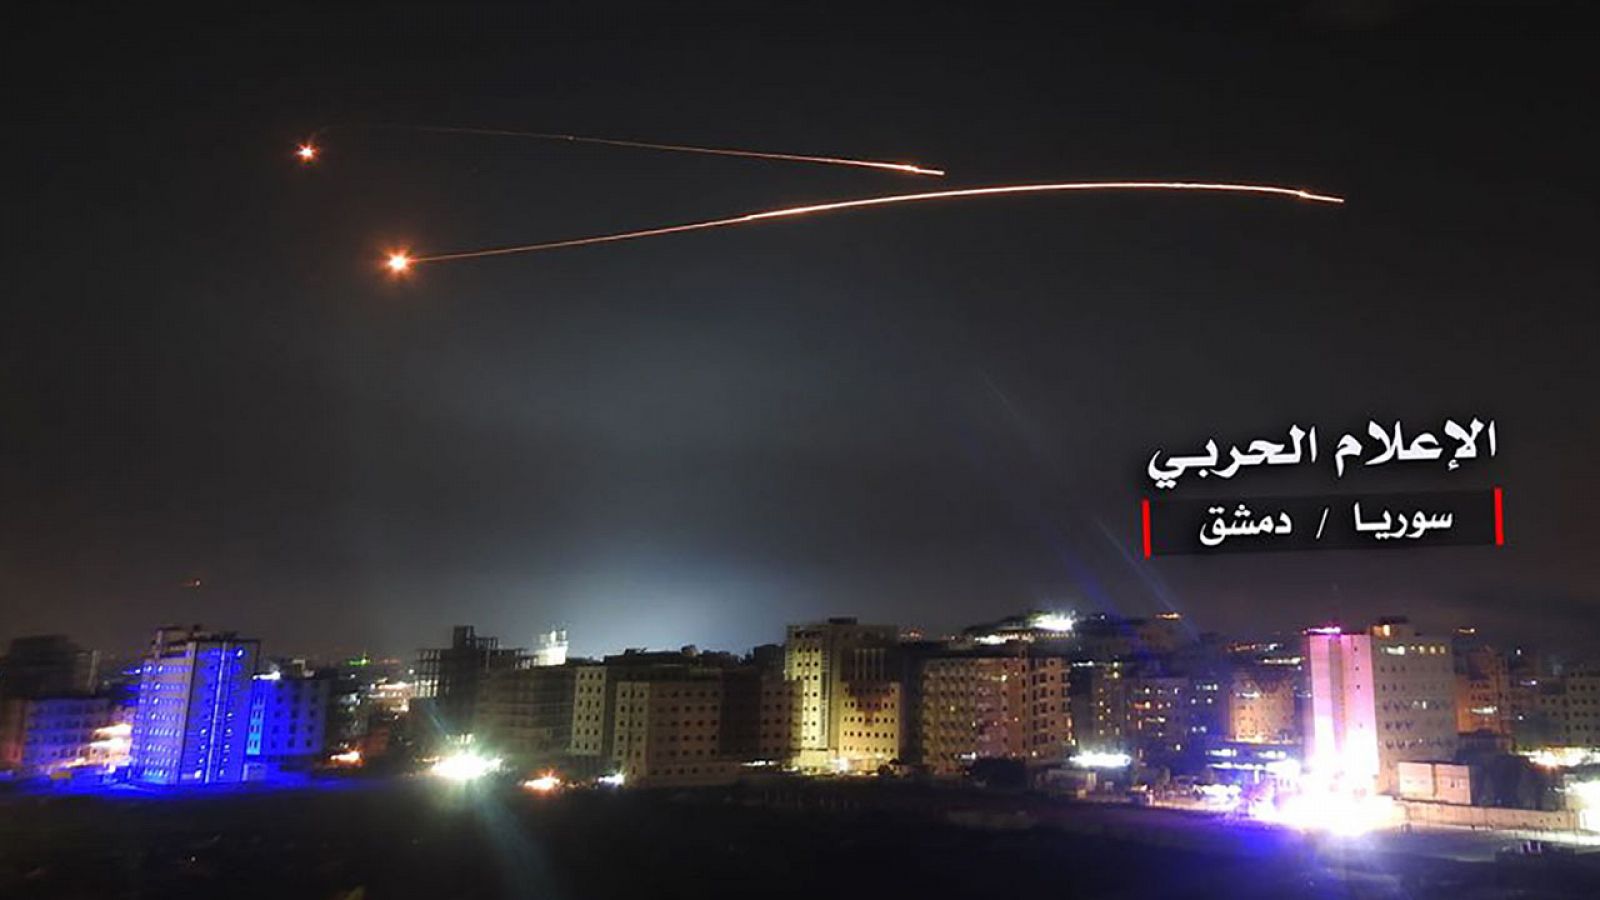 Fotografía distribuida por el Gobierno Sirio de los misiles israelíes disparados en Siria el jueves